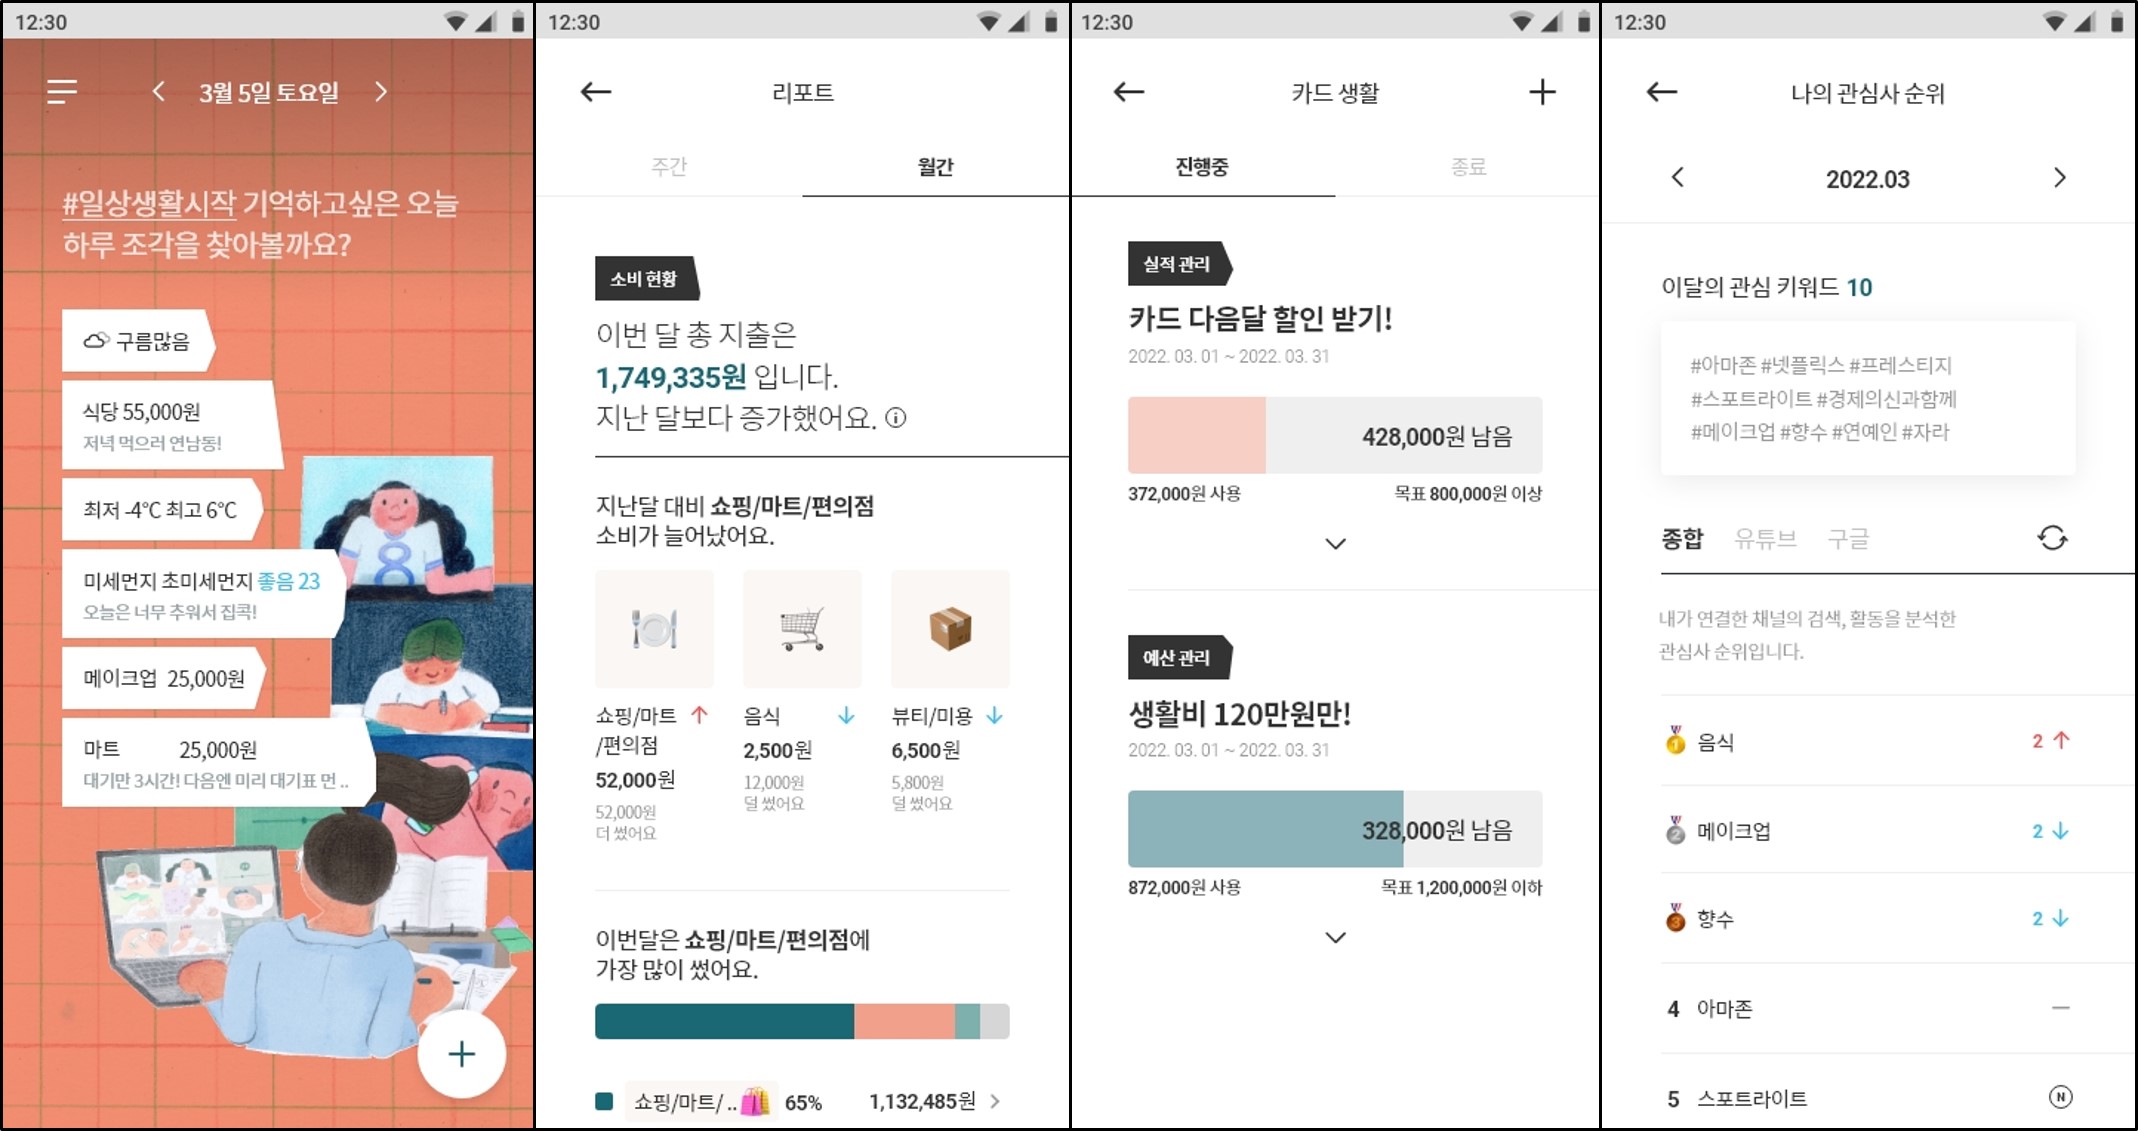 고객 일상을 데이터로 자동 기록하는 LG CNS 마이데이터 ‘하루조각’ 앱 화면. LG CNS 제공